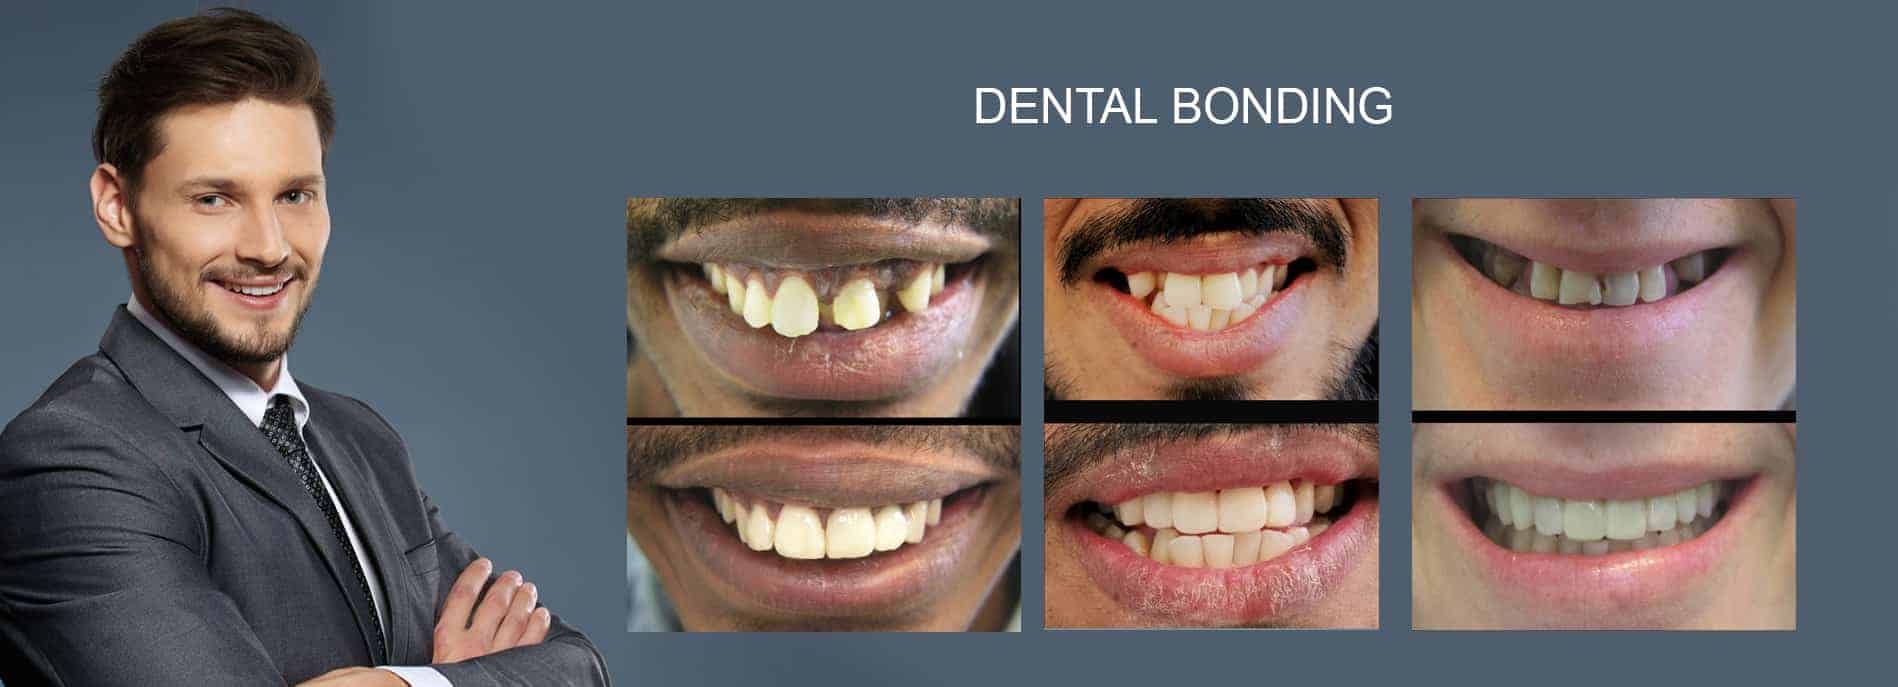 DENTAL BONDING Cosmetic Dentist Melbourne